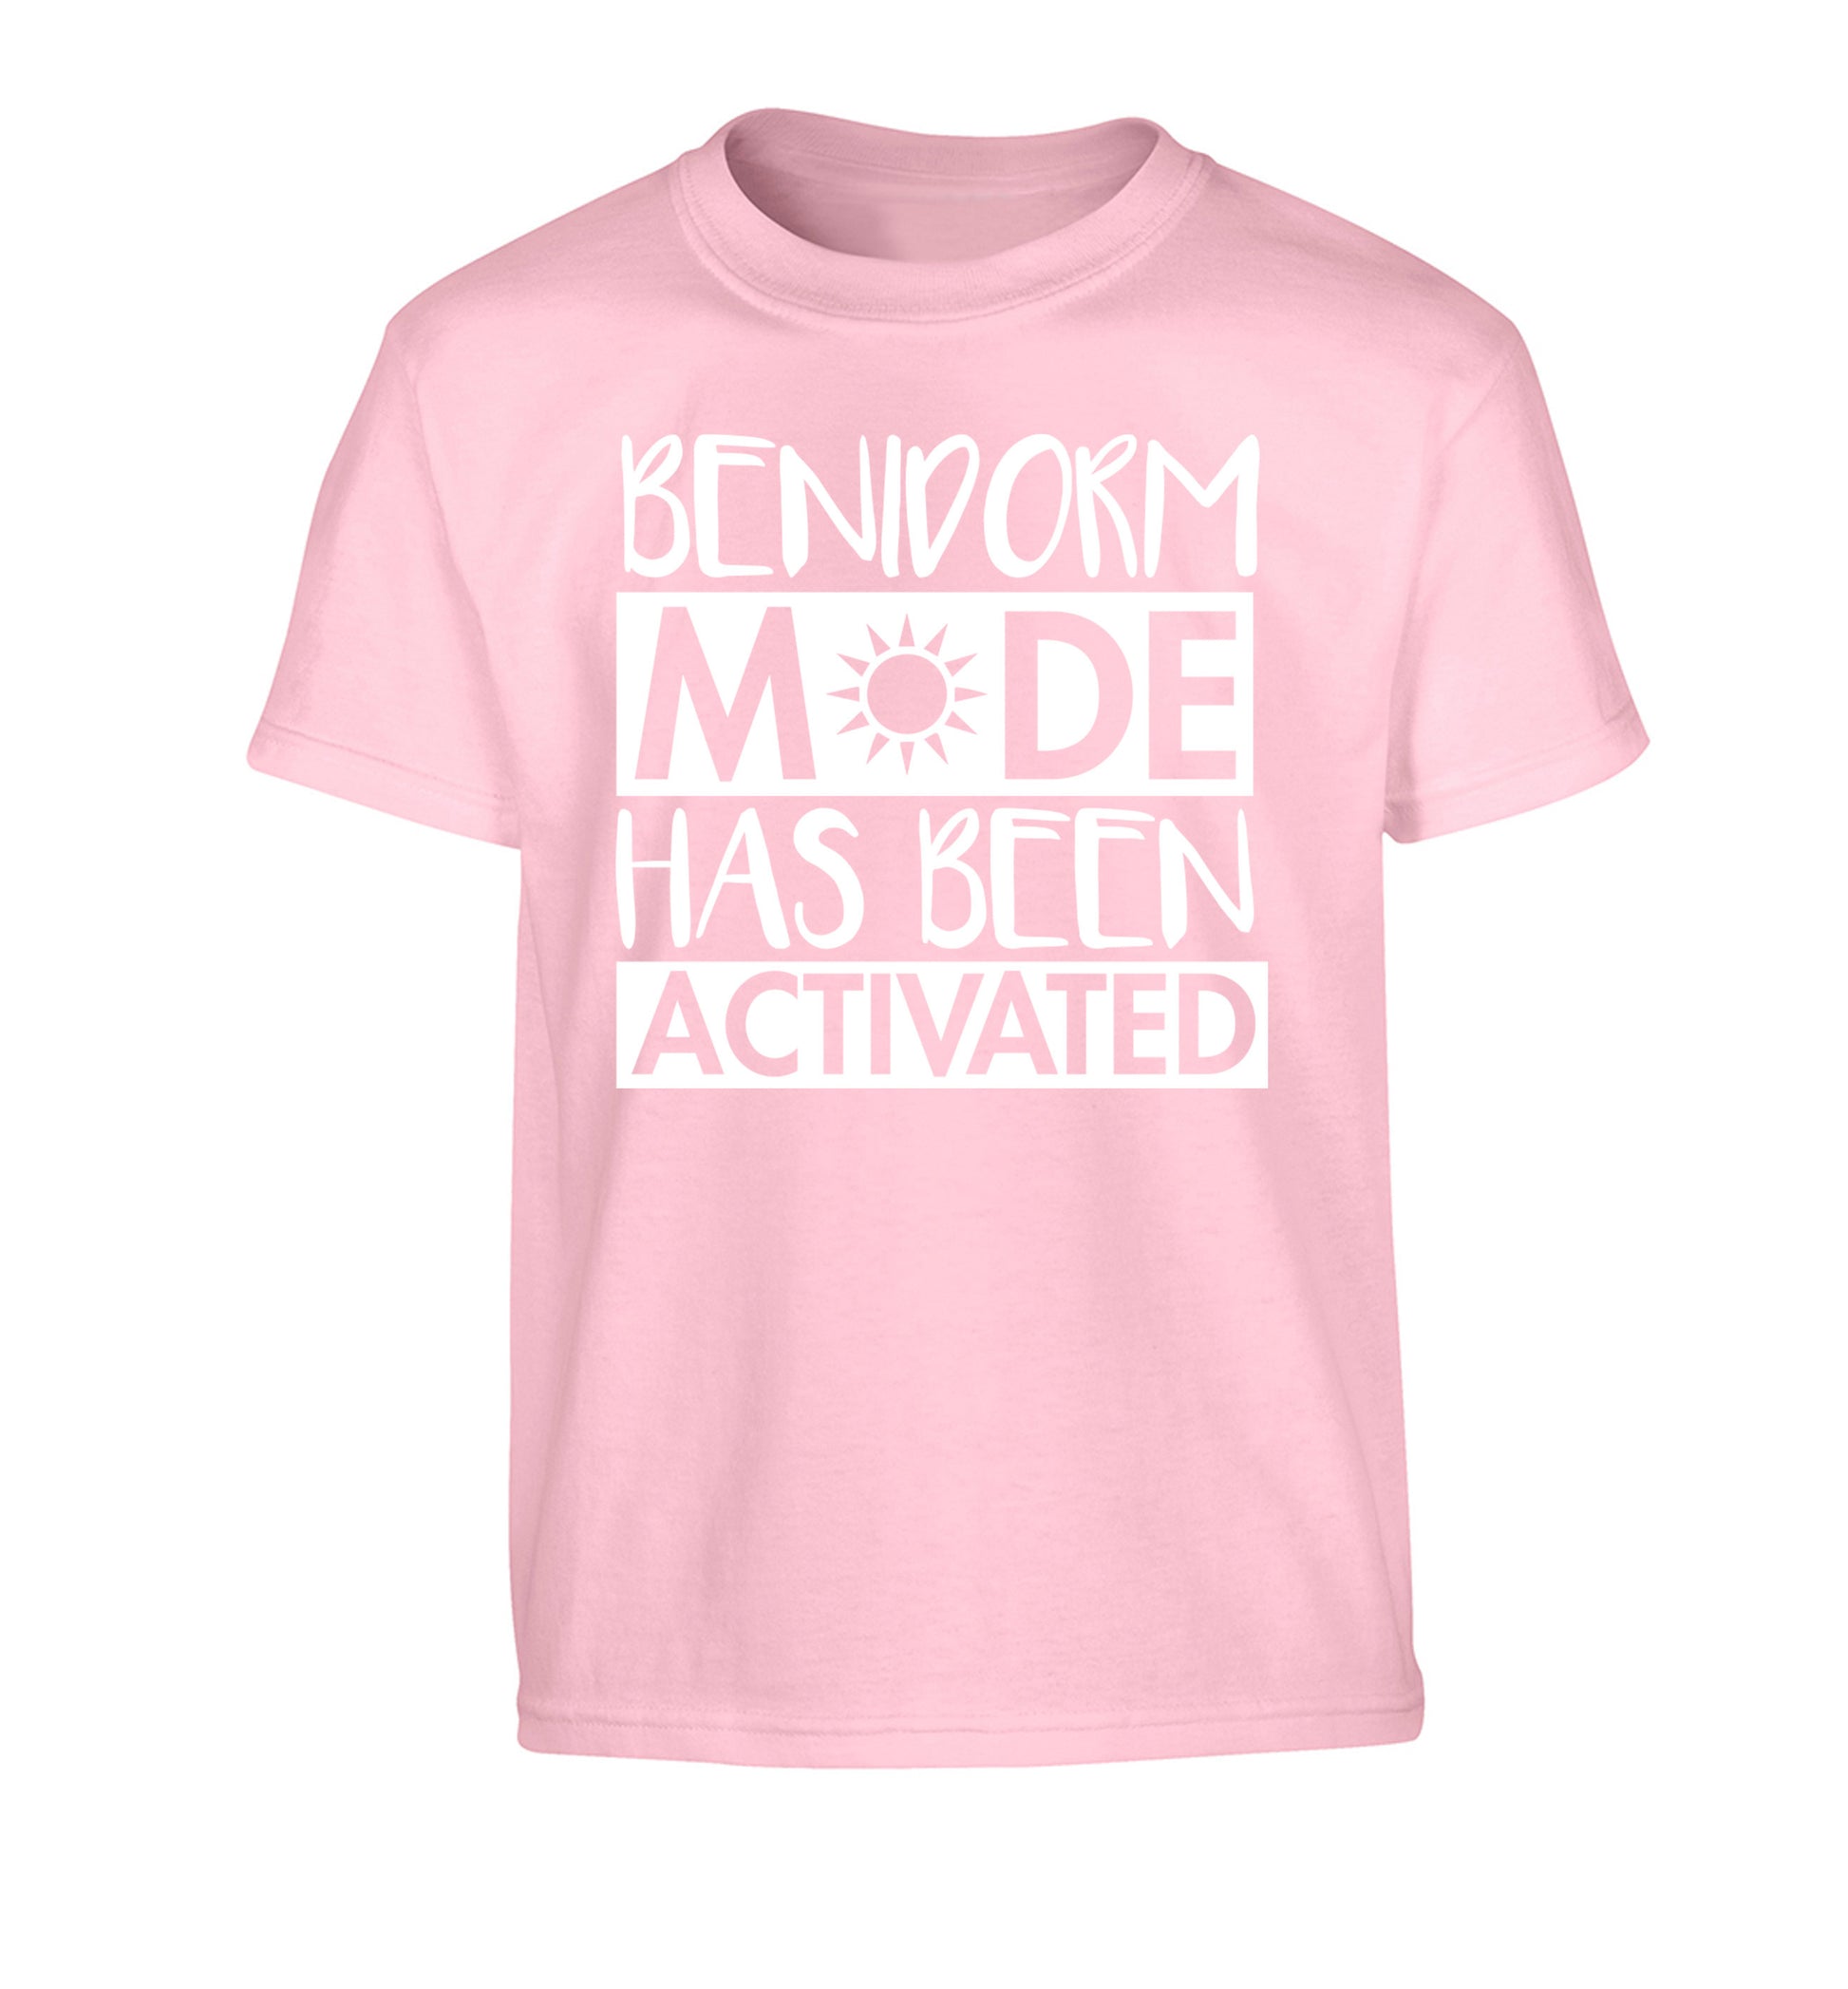 Benidorm mode has been activated Children's light pink Tshirt 12-14 Years